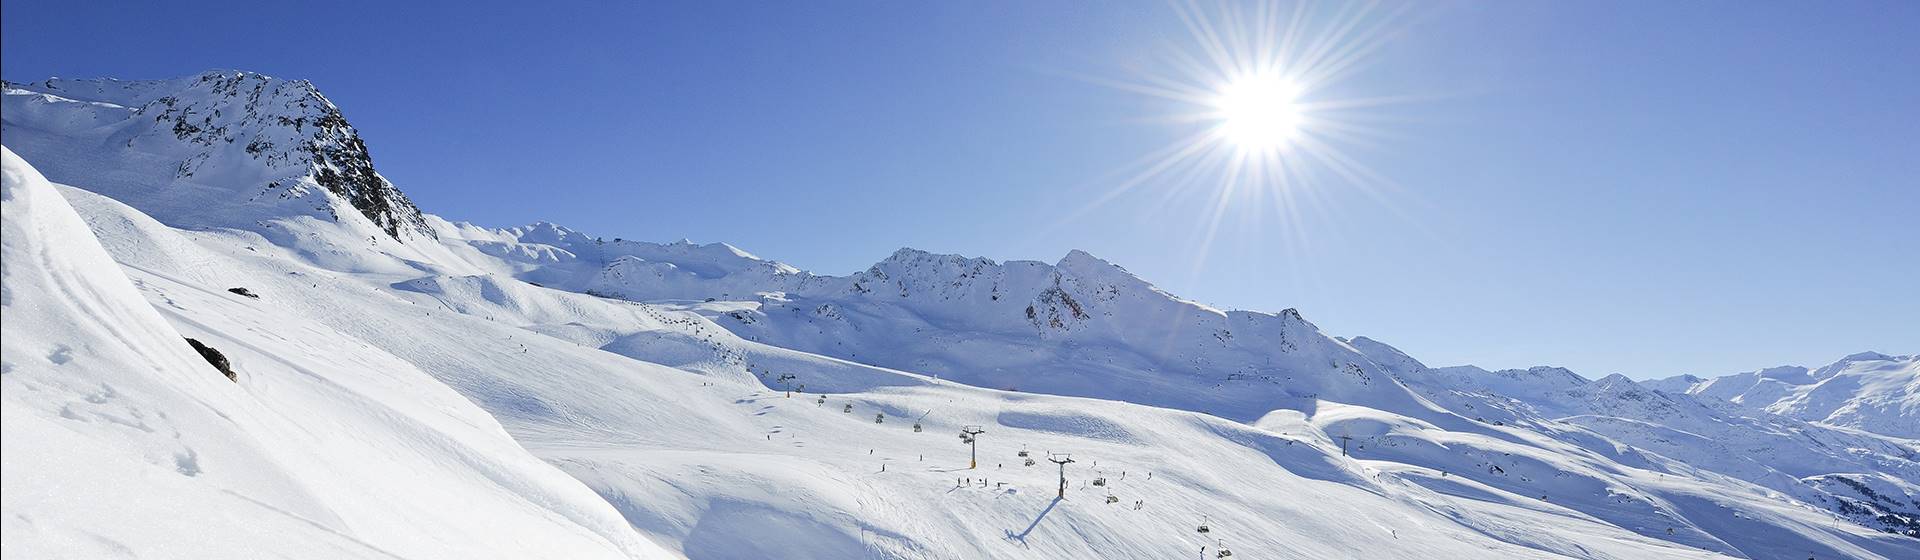 Skigebiet mit Lifanlagen bei strahlendem Sonnenschein